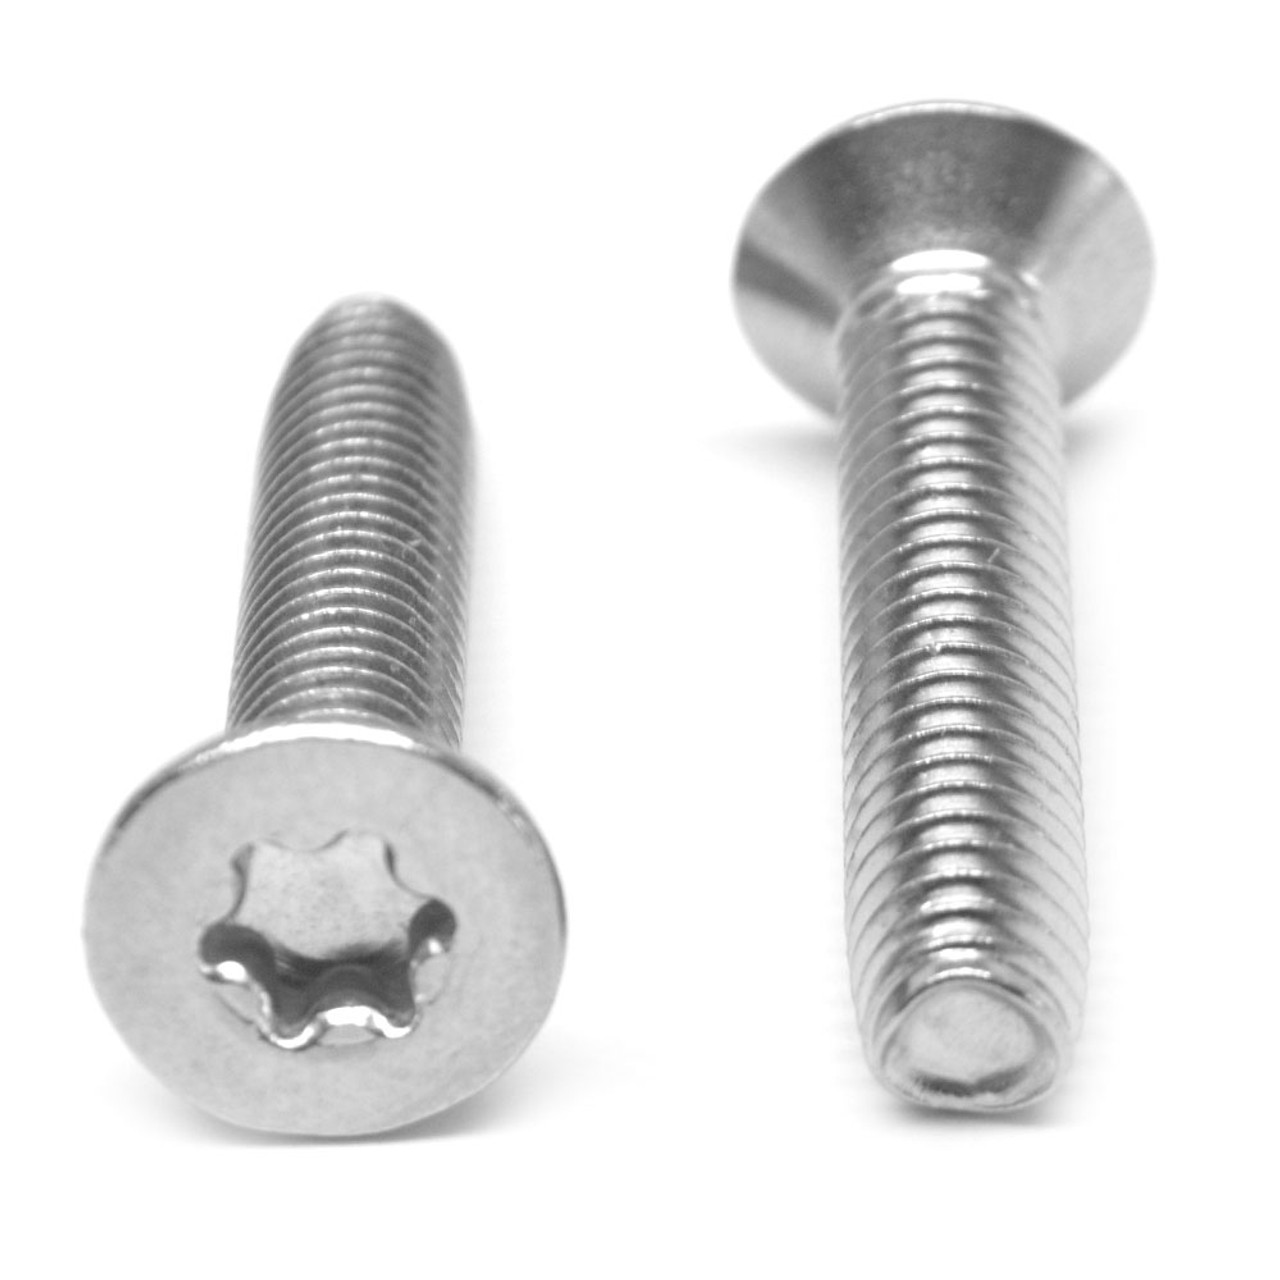 M4 x 0.70 x 12 MM Coarse Thread Thread Rolling Screw 6 Lobe Flat Head Stainless Steel 18-8 Wax